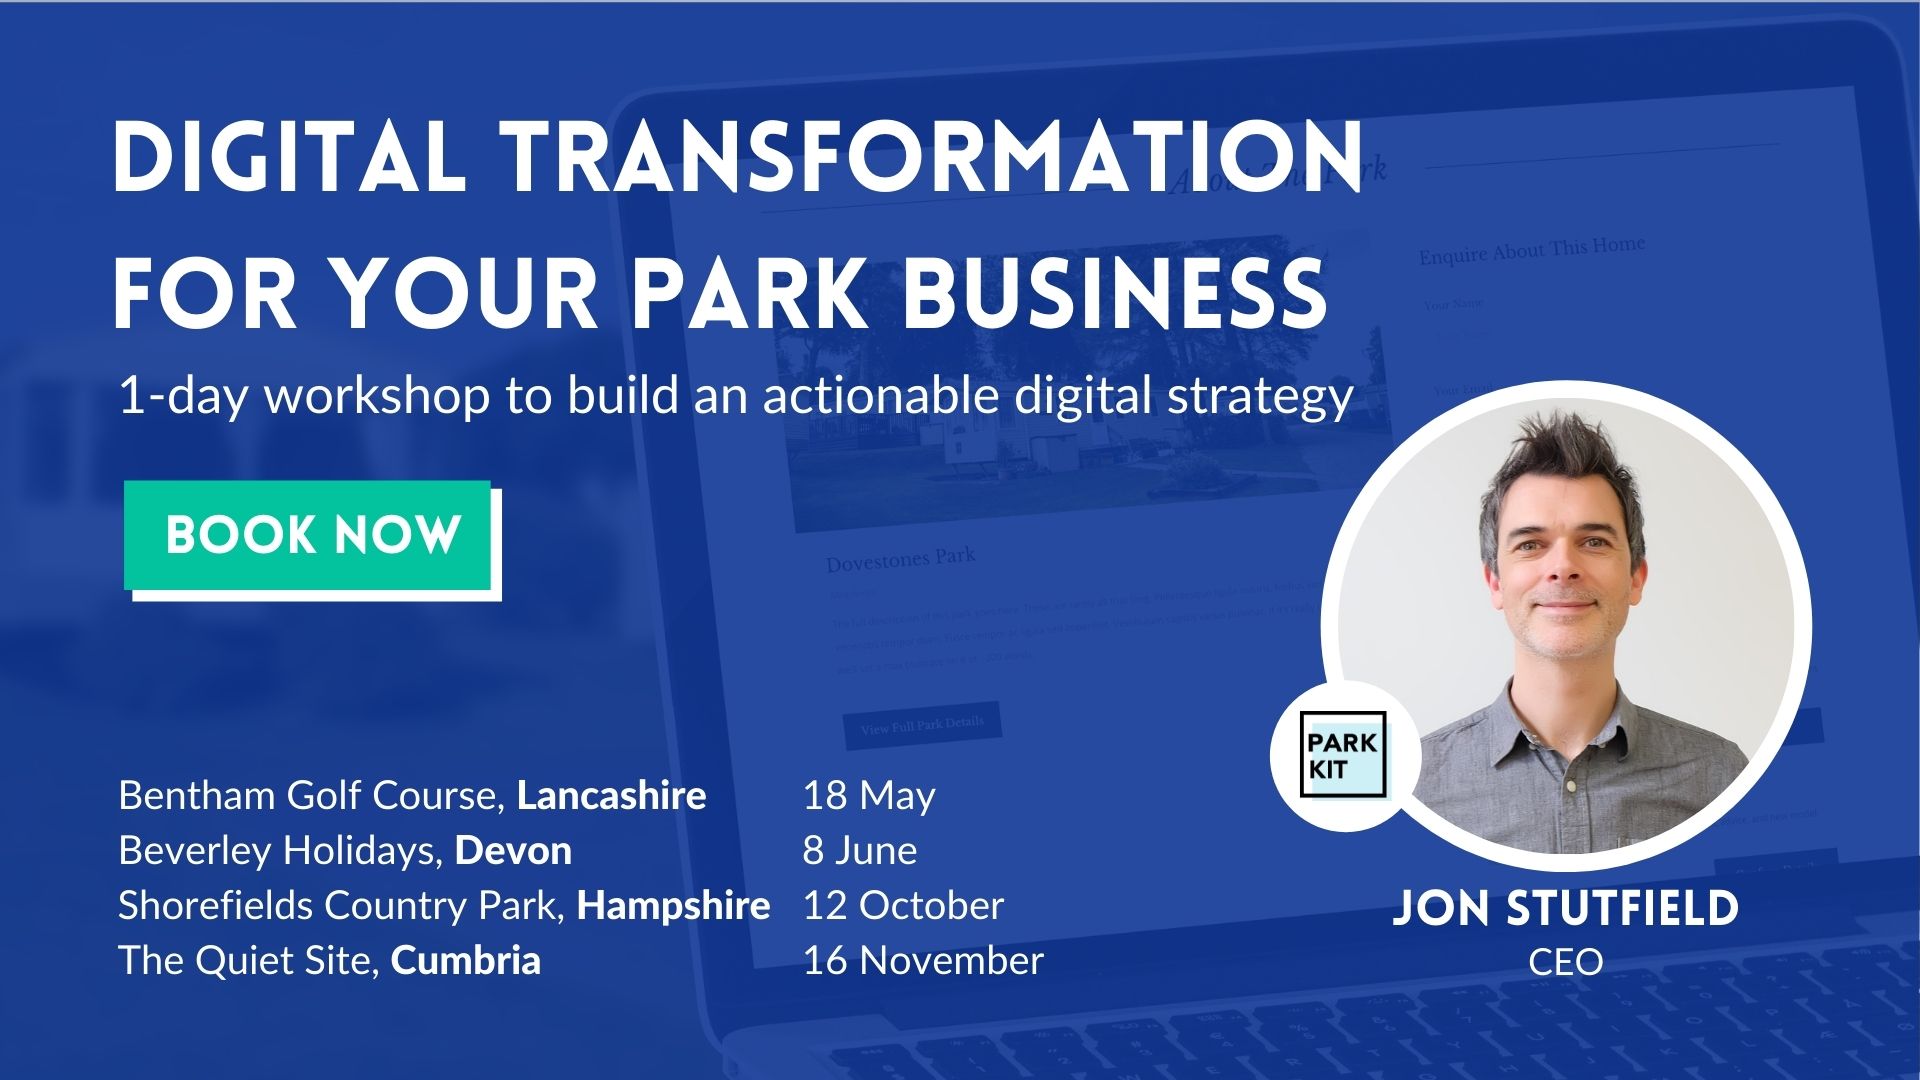 Digital transformation for your park business workshop